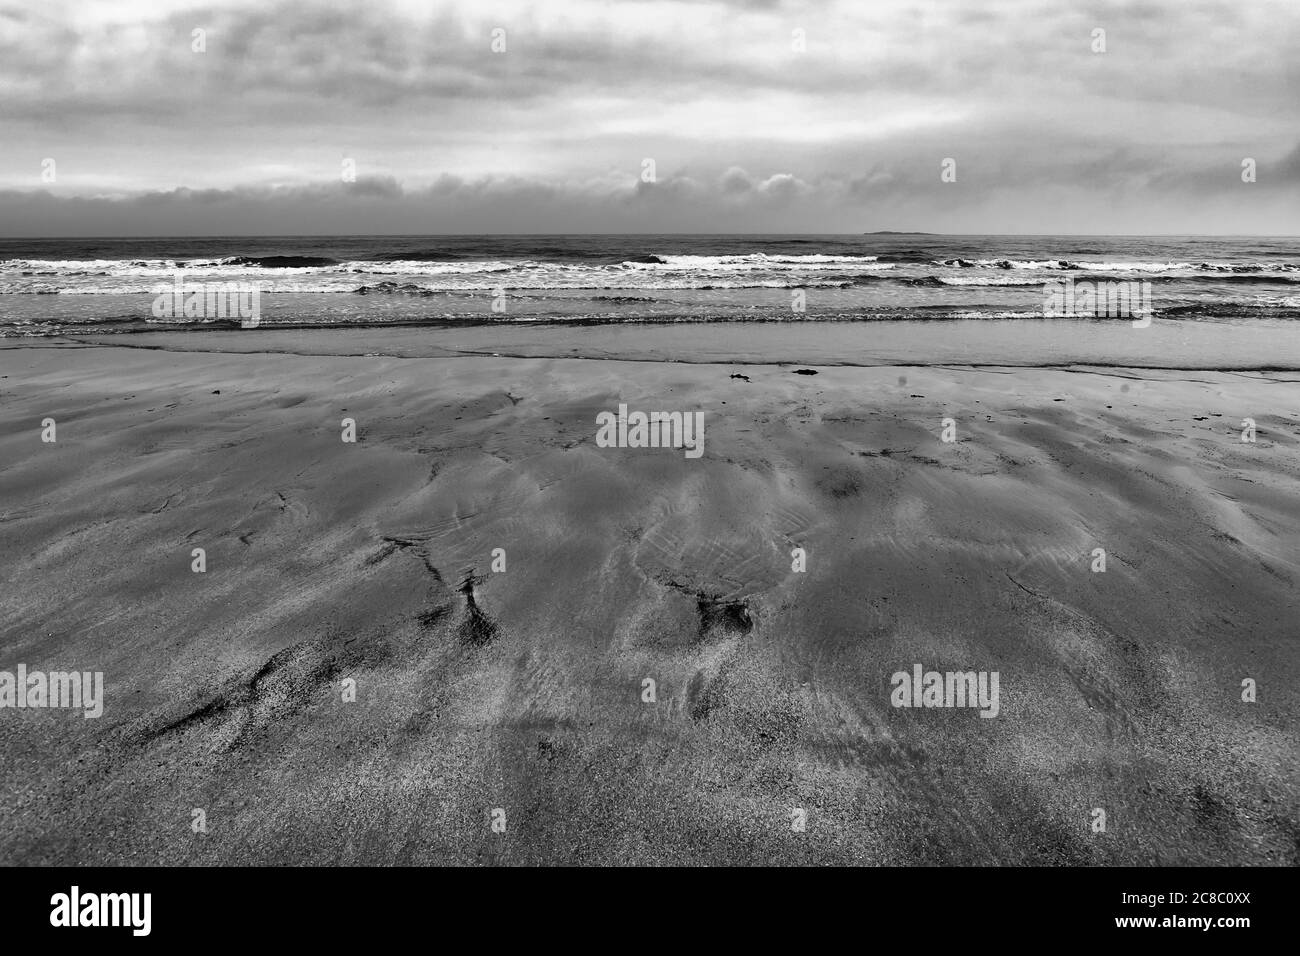 Die Nordsee und die Insel Inner Farne von Bamburgh Sands, Northumberland, England, Großbritannien bei Ebbe, an einem trüben, bewölkten Tag. Schwarz-Weiß-Version Stockfoto